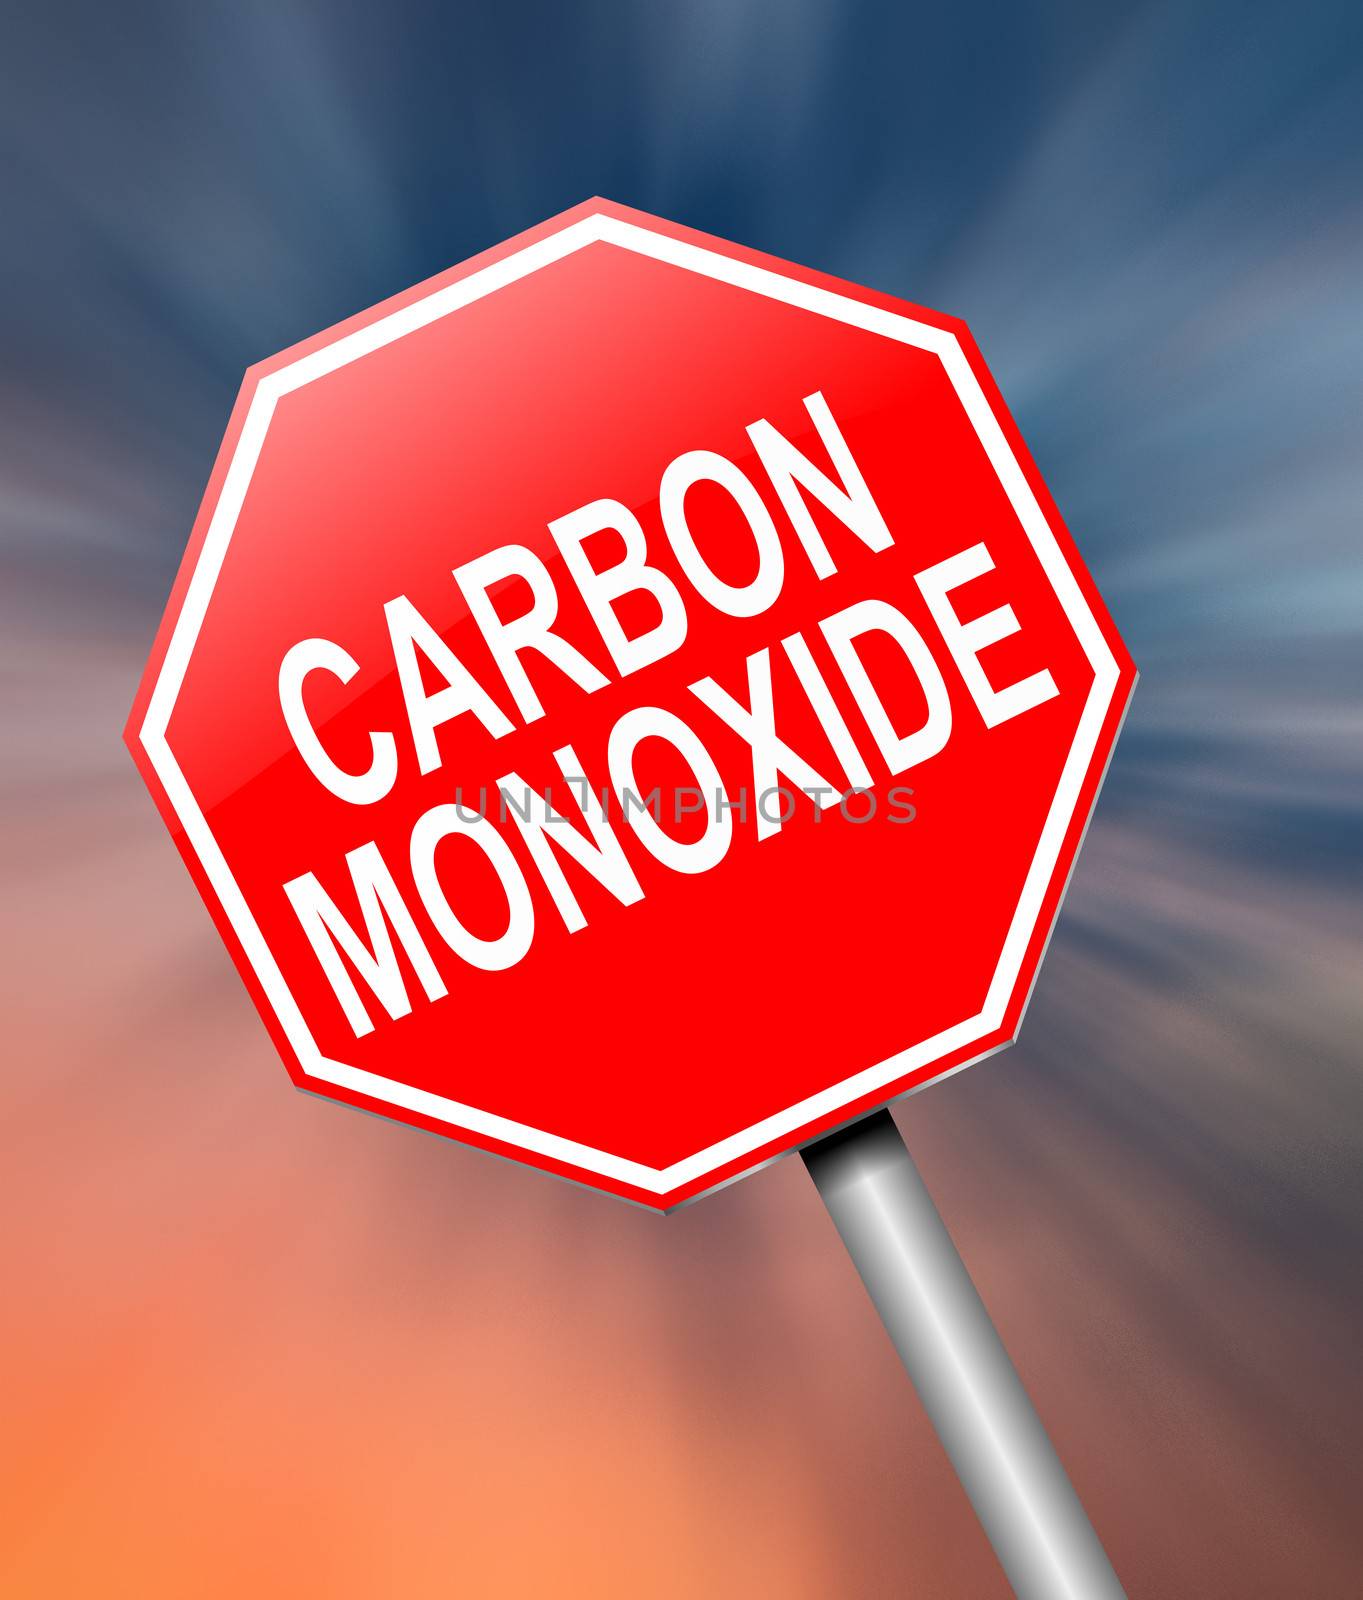 Illustration depicting a sign with a Carbon Monoxide concept.